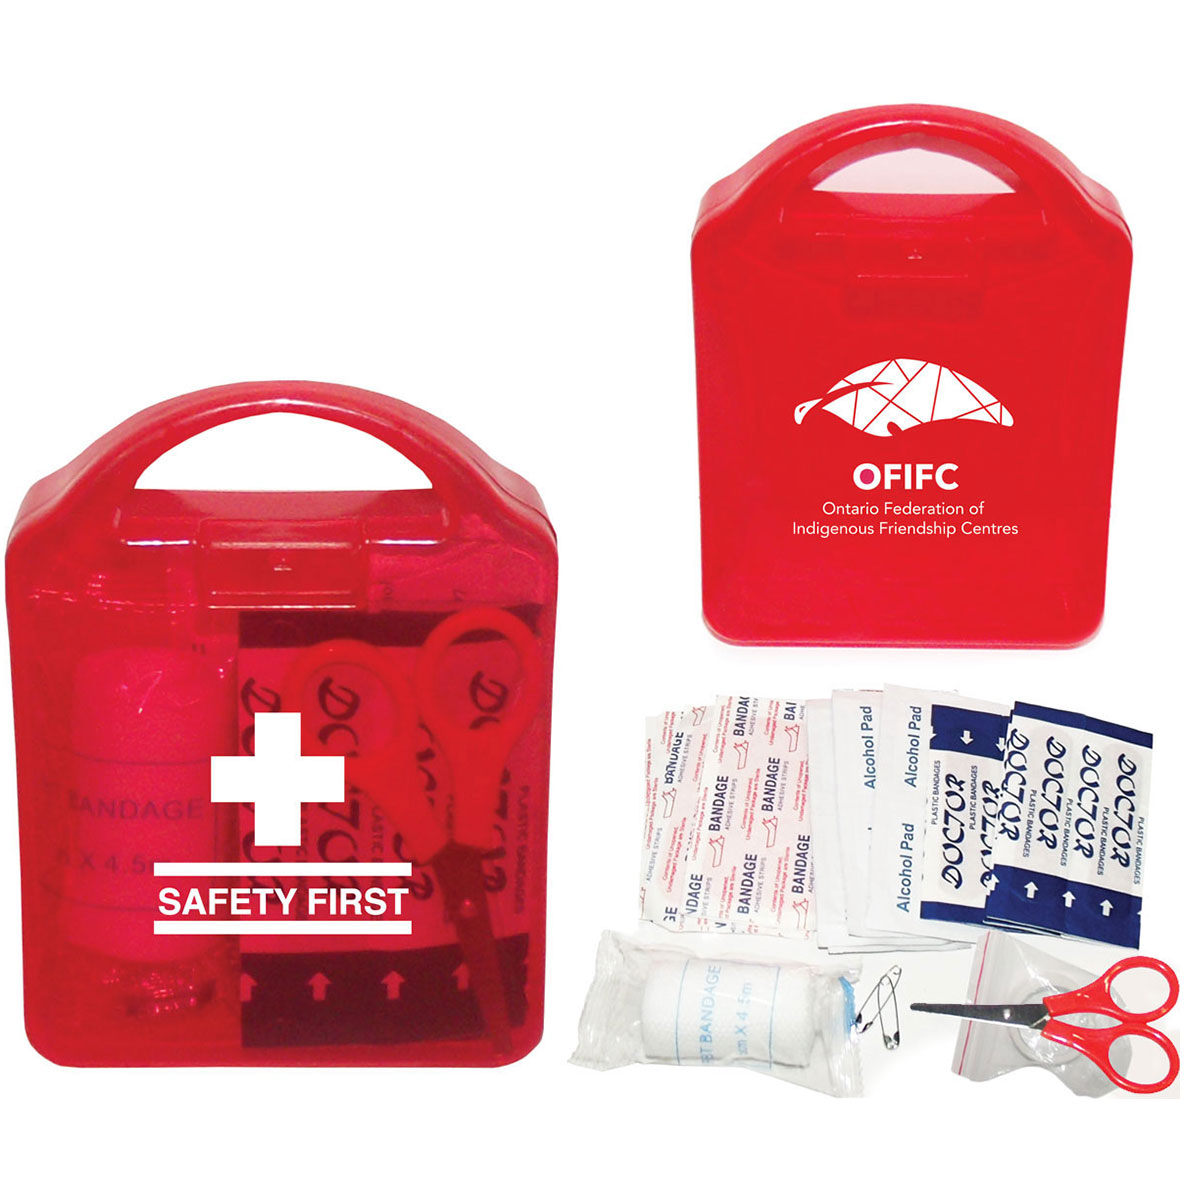 Emergency First Aid Box